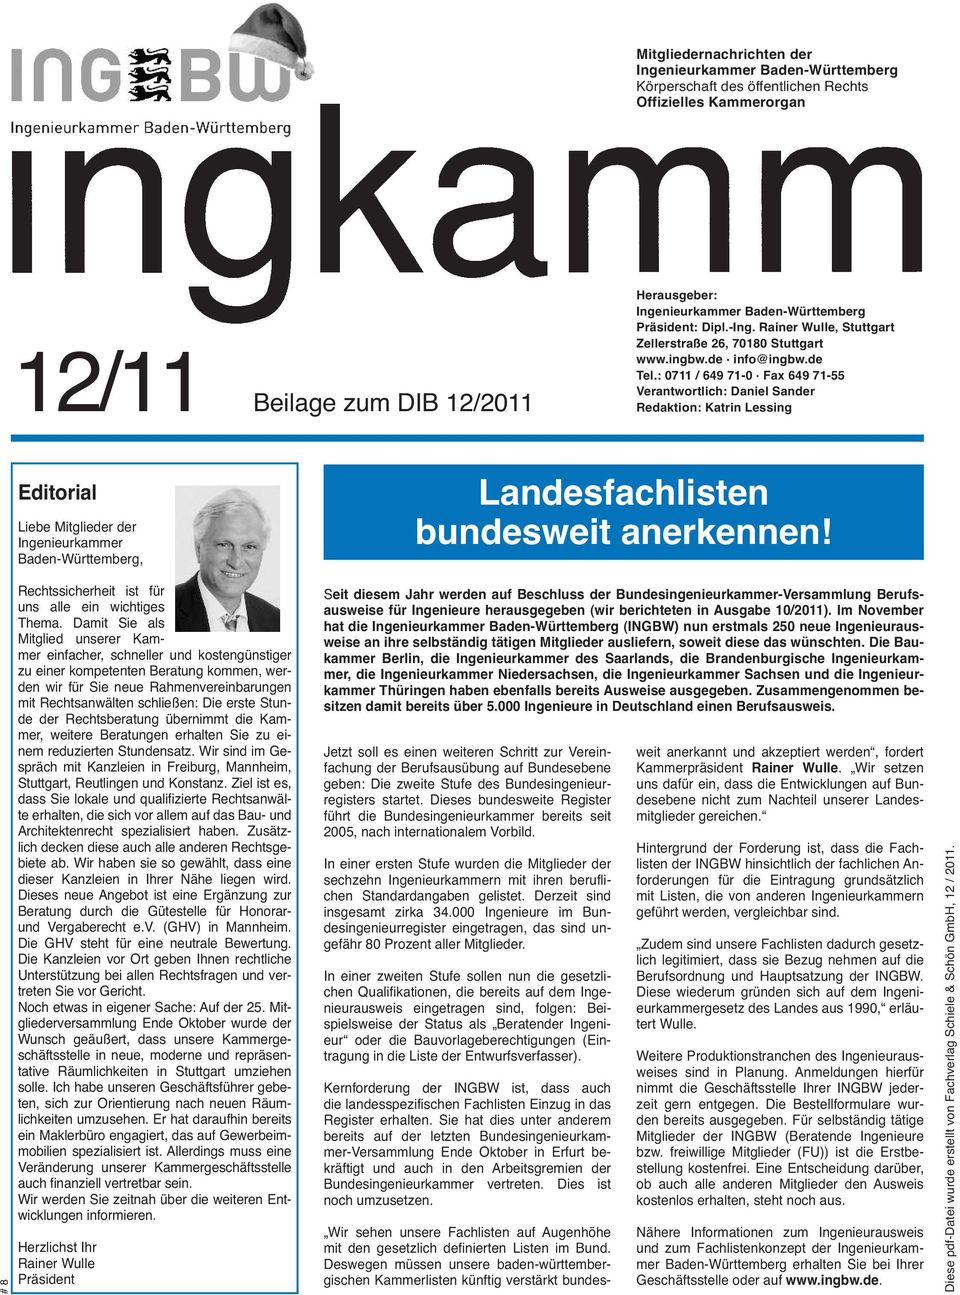 Fax 649 71-55 Verantwortlich: Daniel Sander Redaktion: Katrin Lessing Editorial Liebe Mitglieder der Ingenieurkammer Baden-Württemberg, Landesfachlisten bundesweit anerkennen!